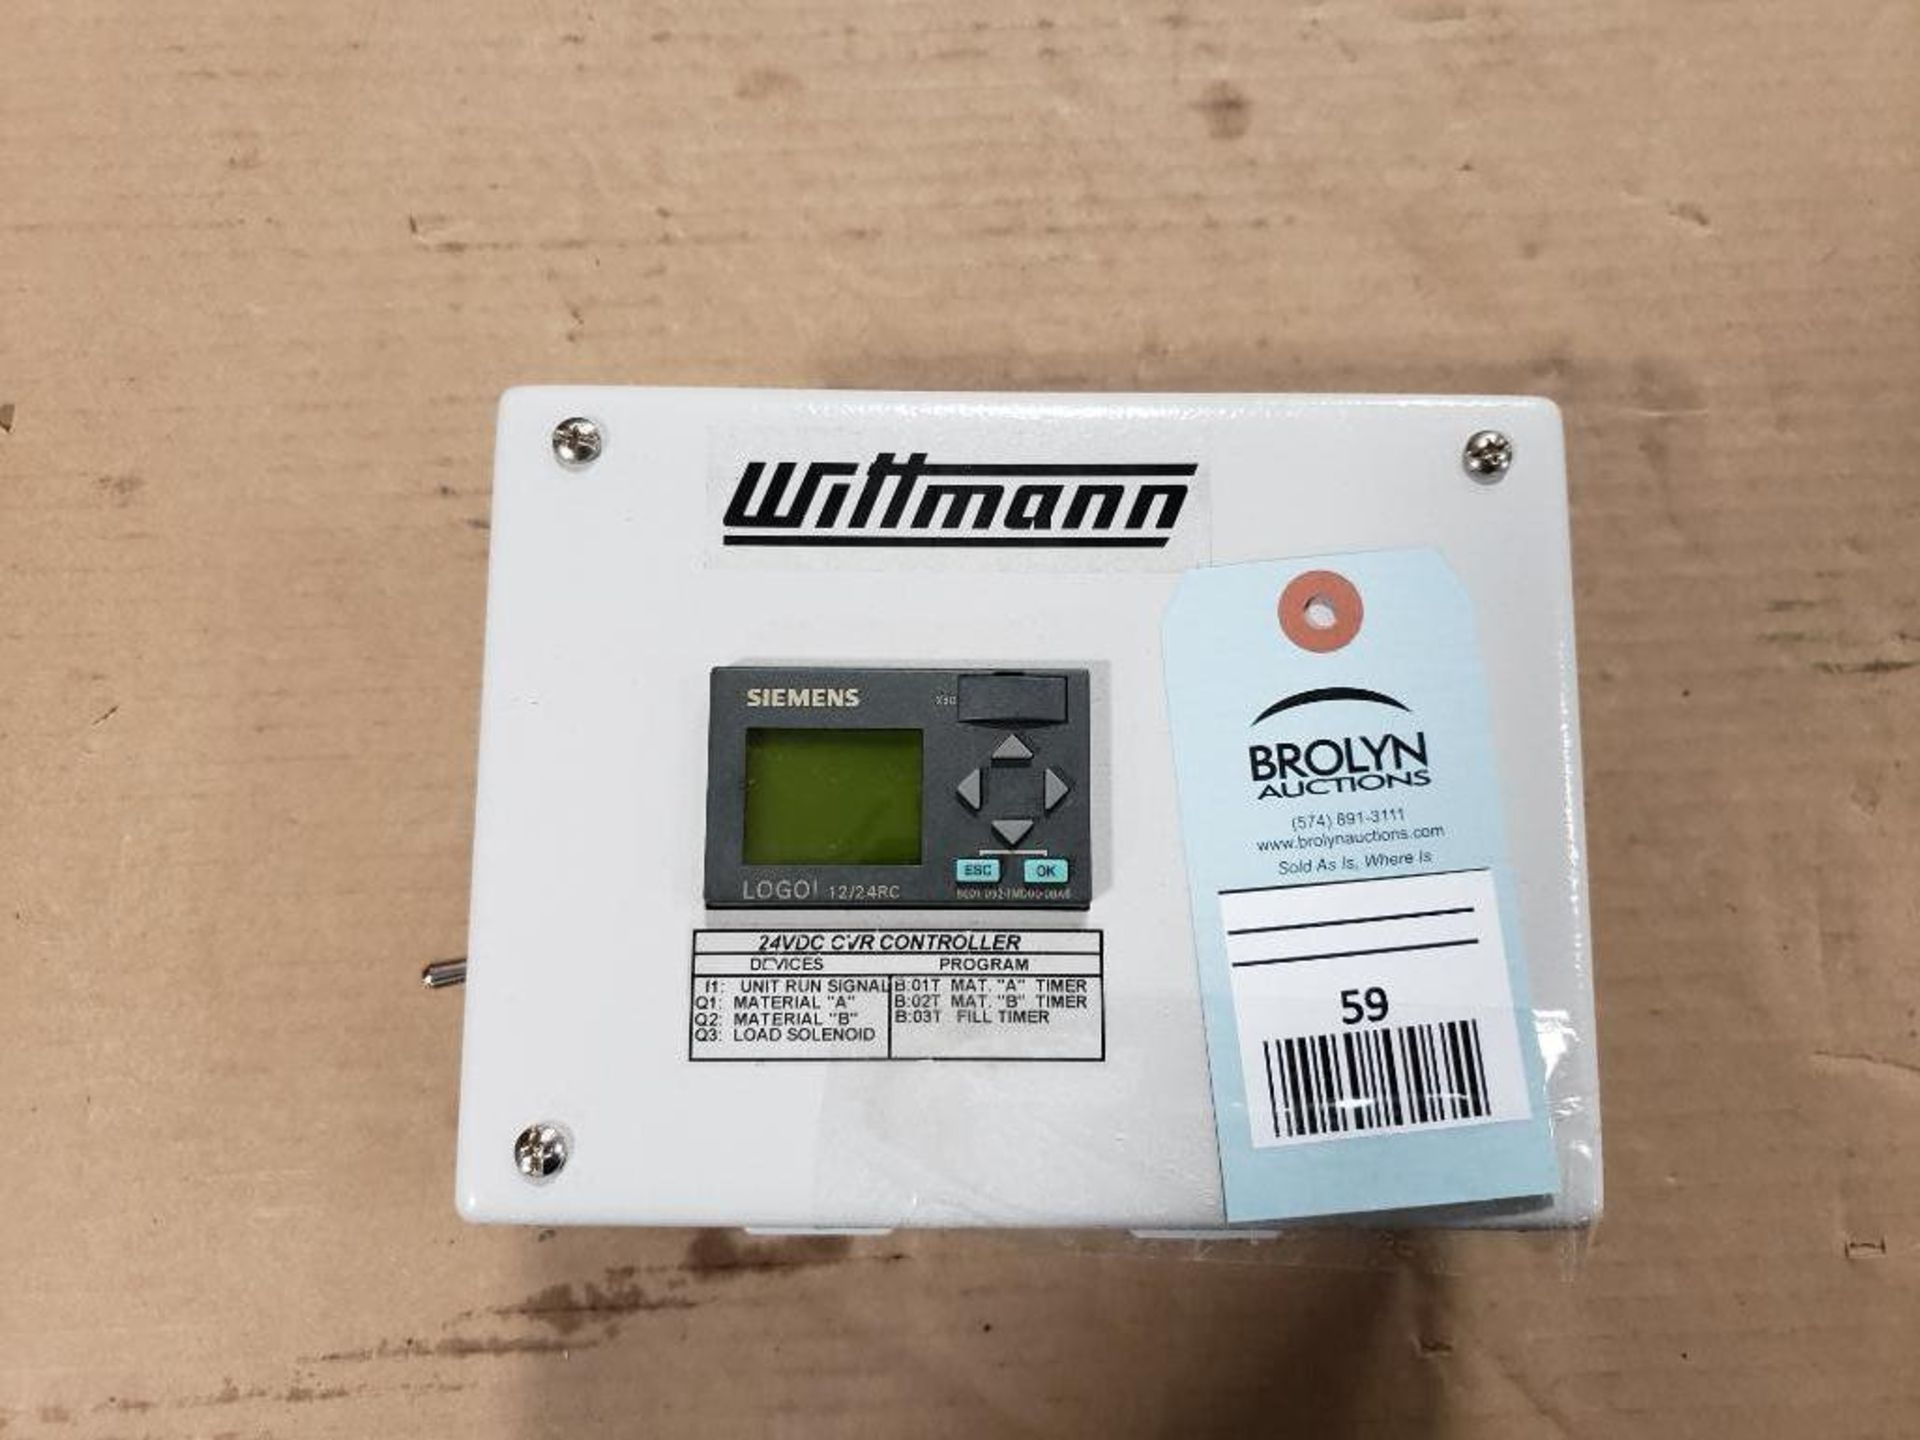 Wittmann 24VDC OVR controller. Siemens 8ED1 052-1MD00-0BA6.